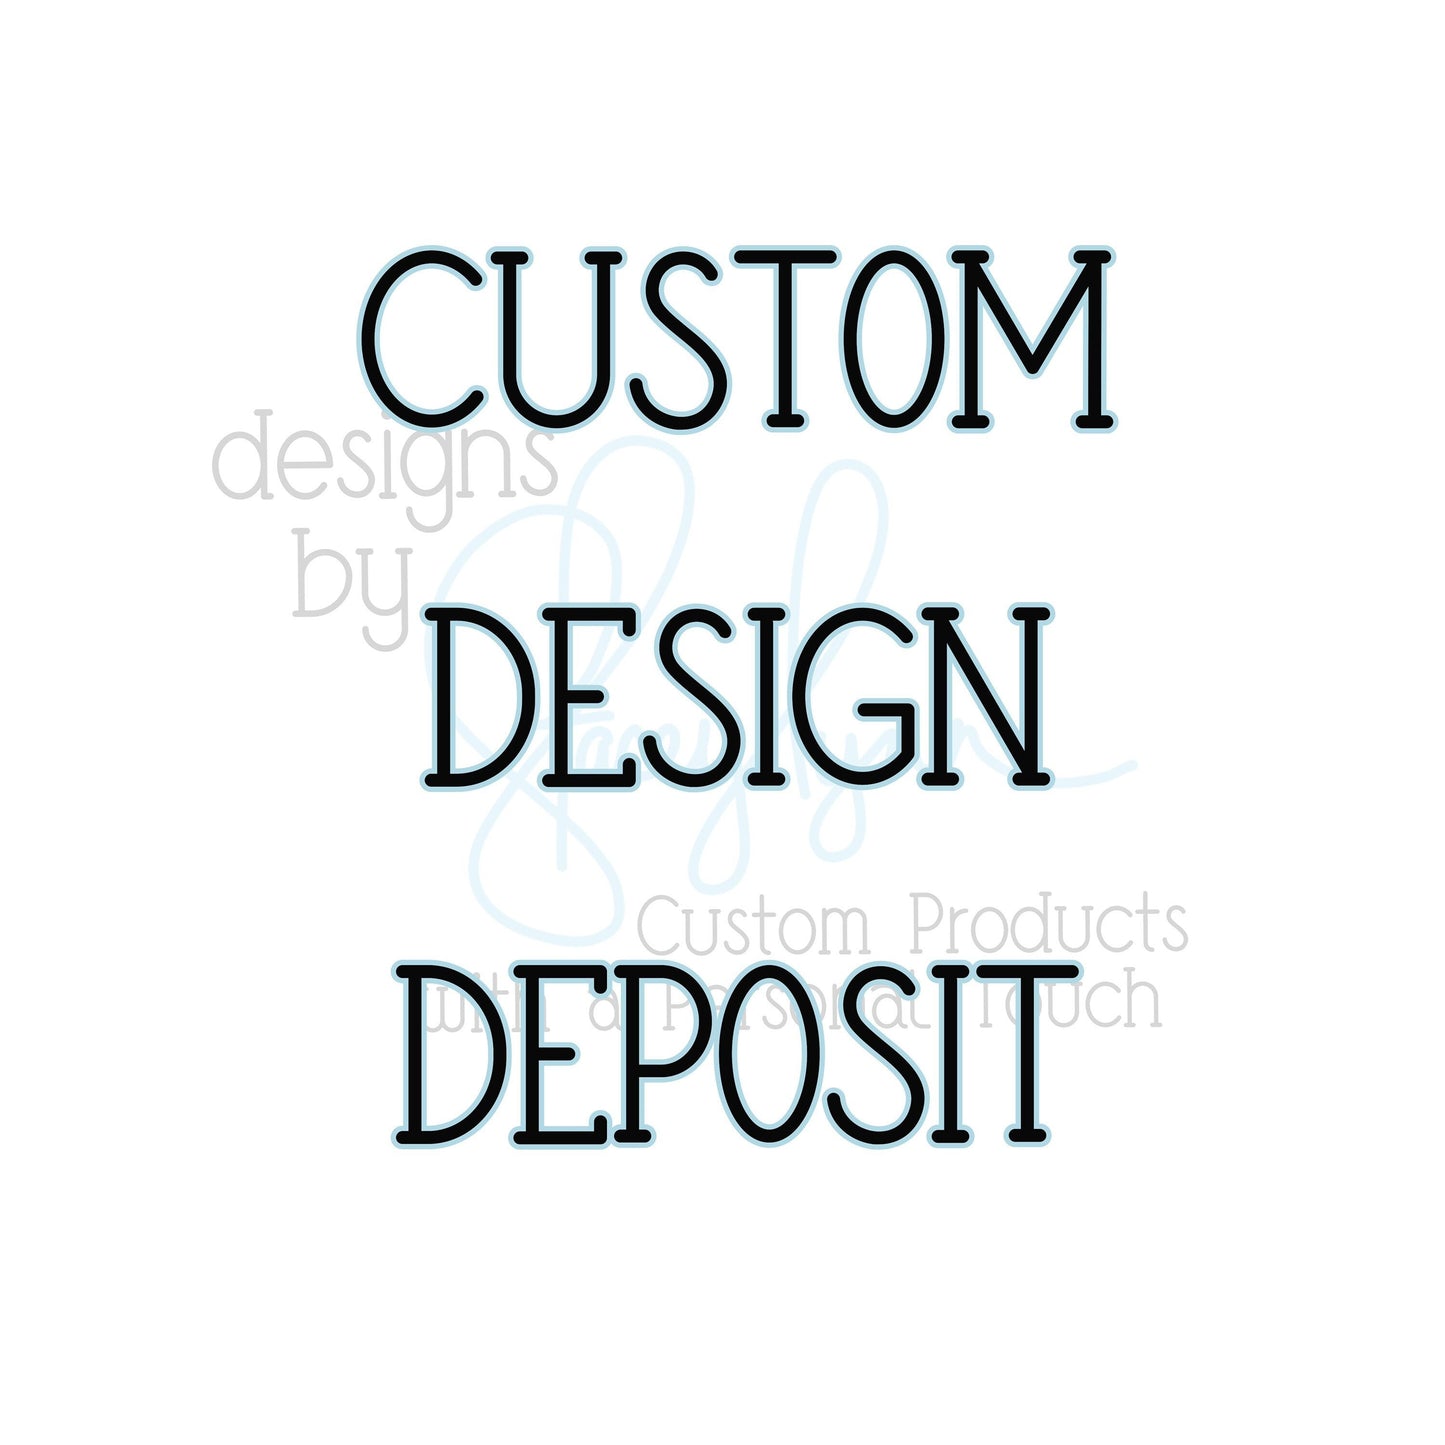 Graphic Design Deposit